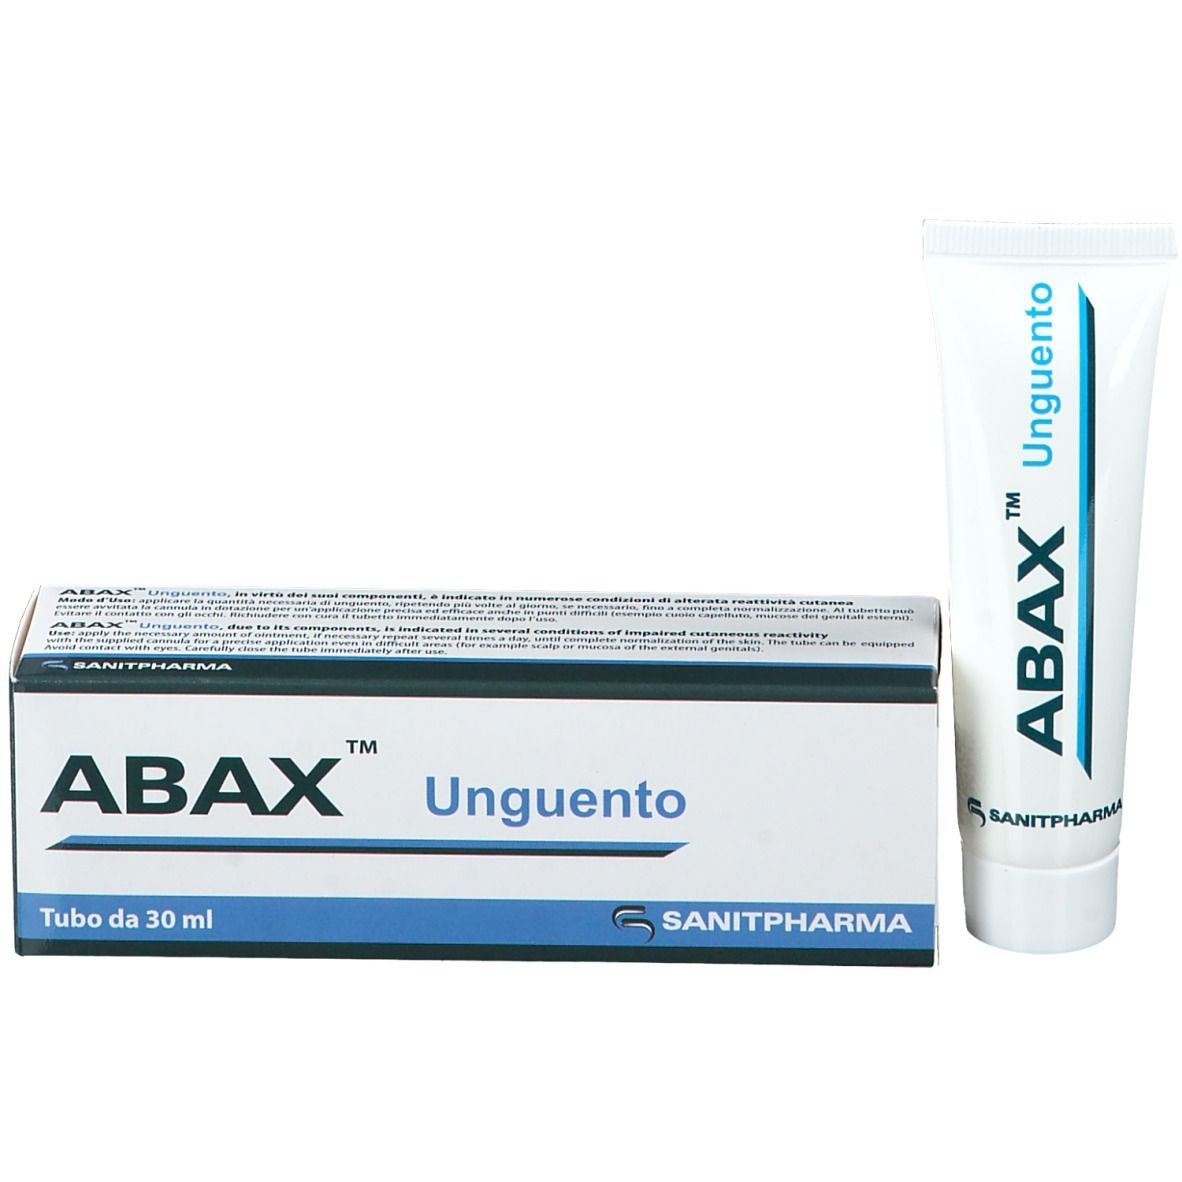 ABAX™ Unguento